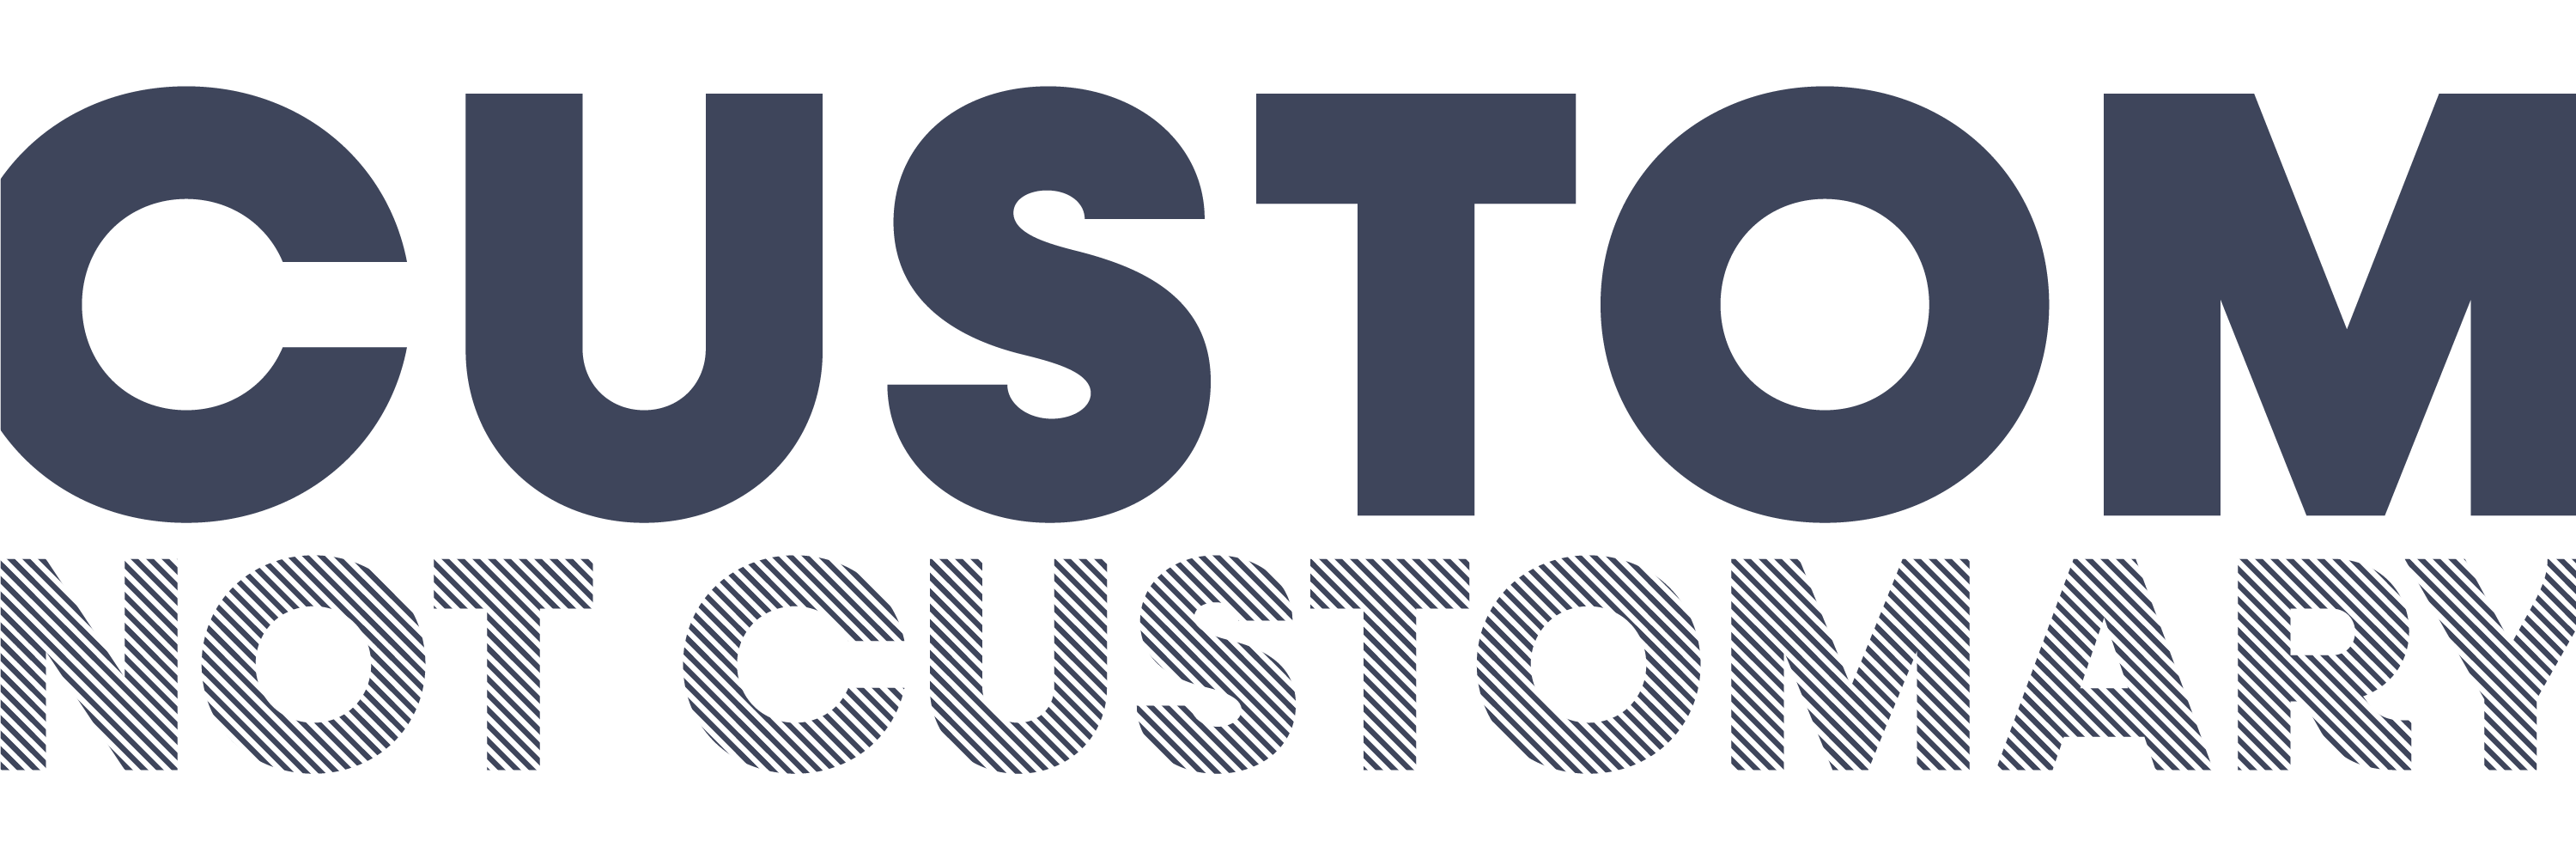 Custom, not customary